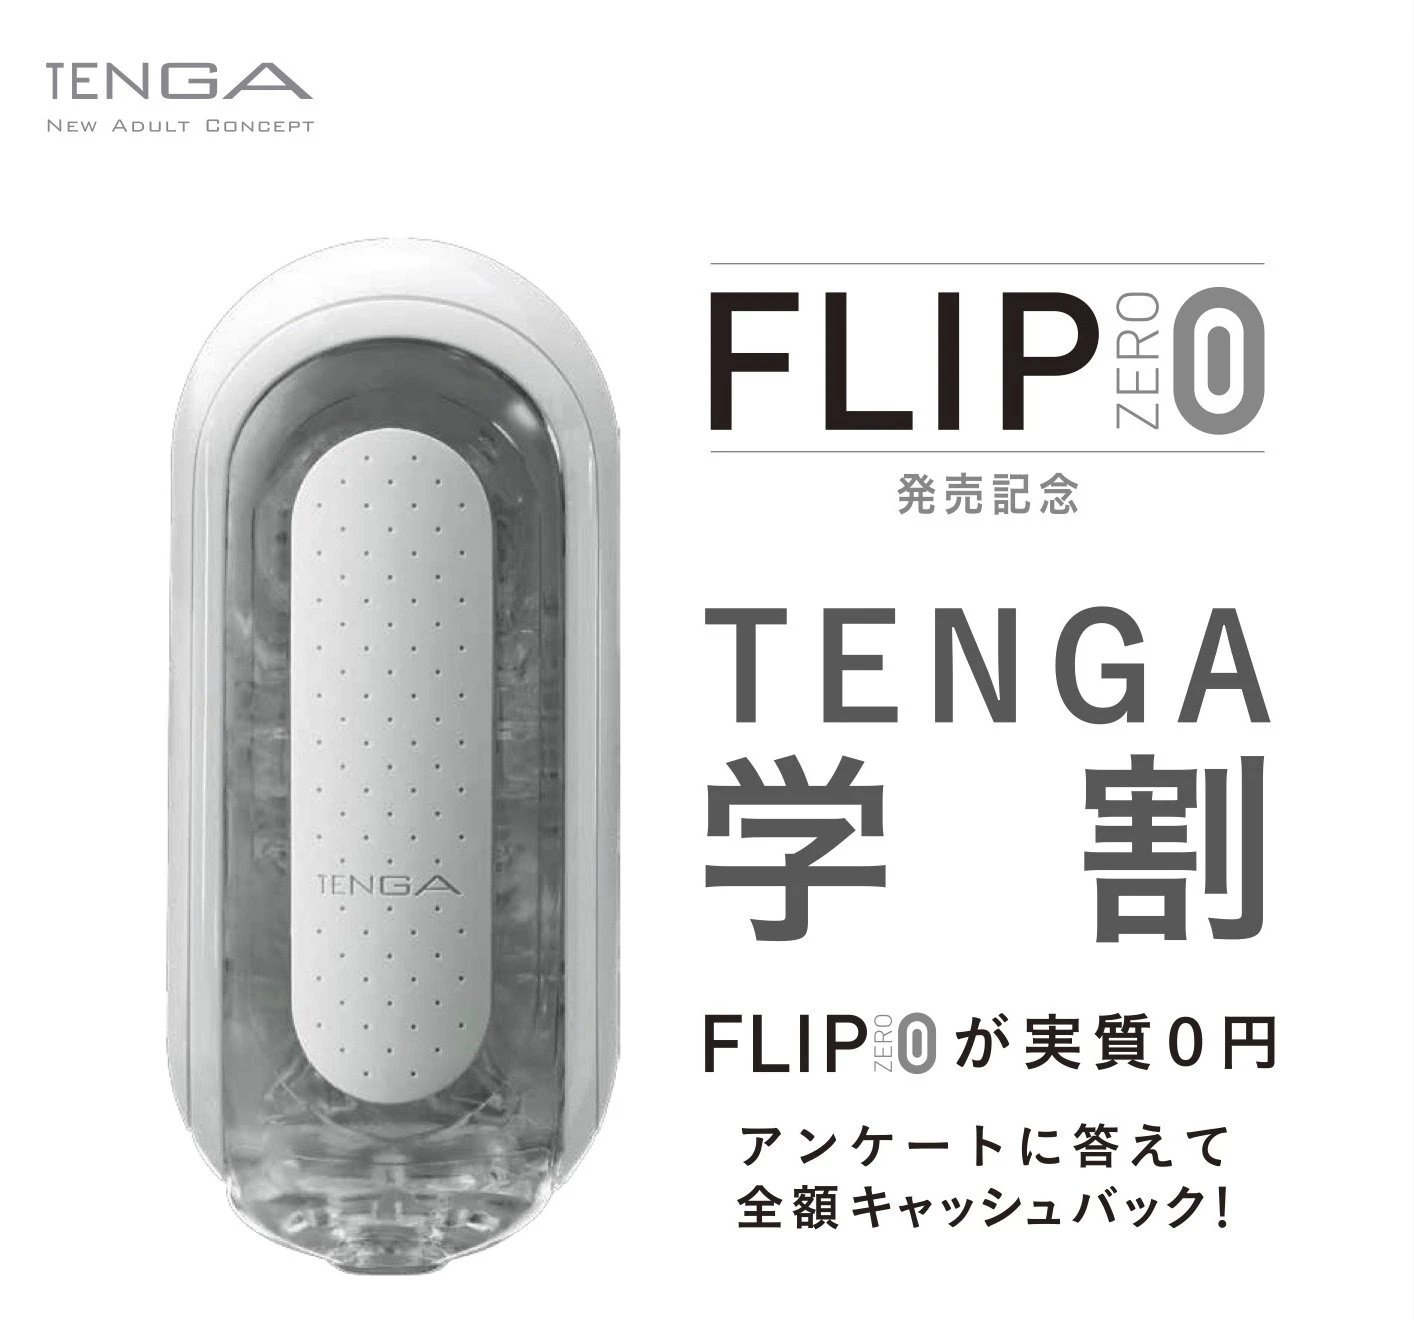 【TENGA 学割】 FLIP 0（ZERO）